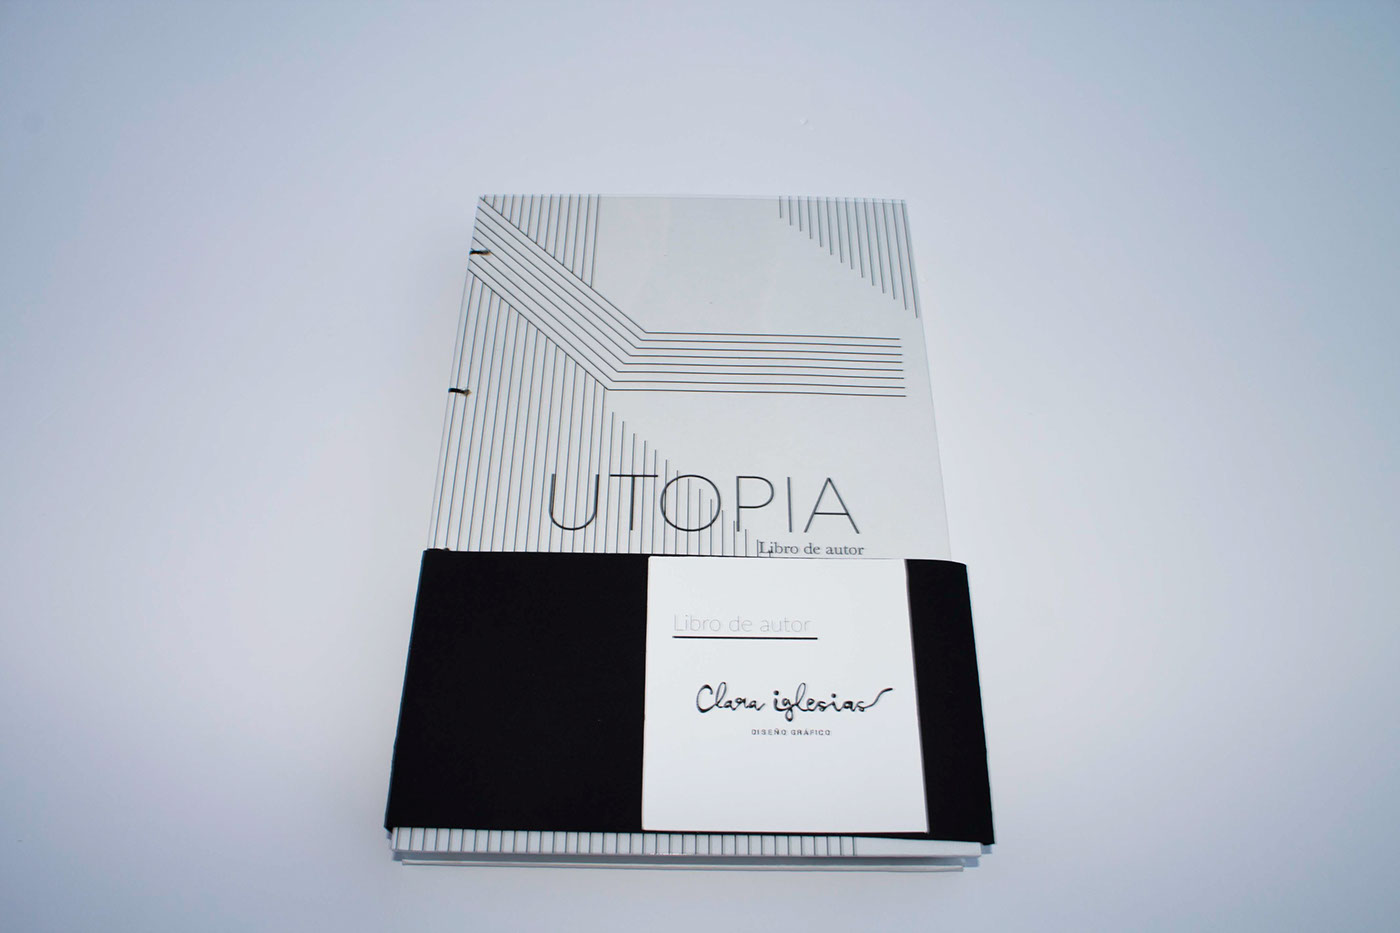 utopia portfolio Libro de autor Diseño editorial design Photography 